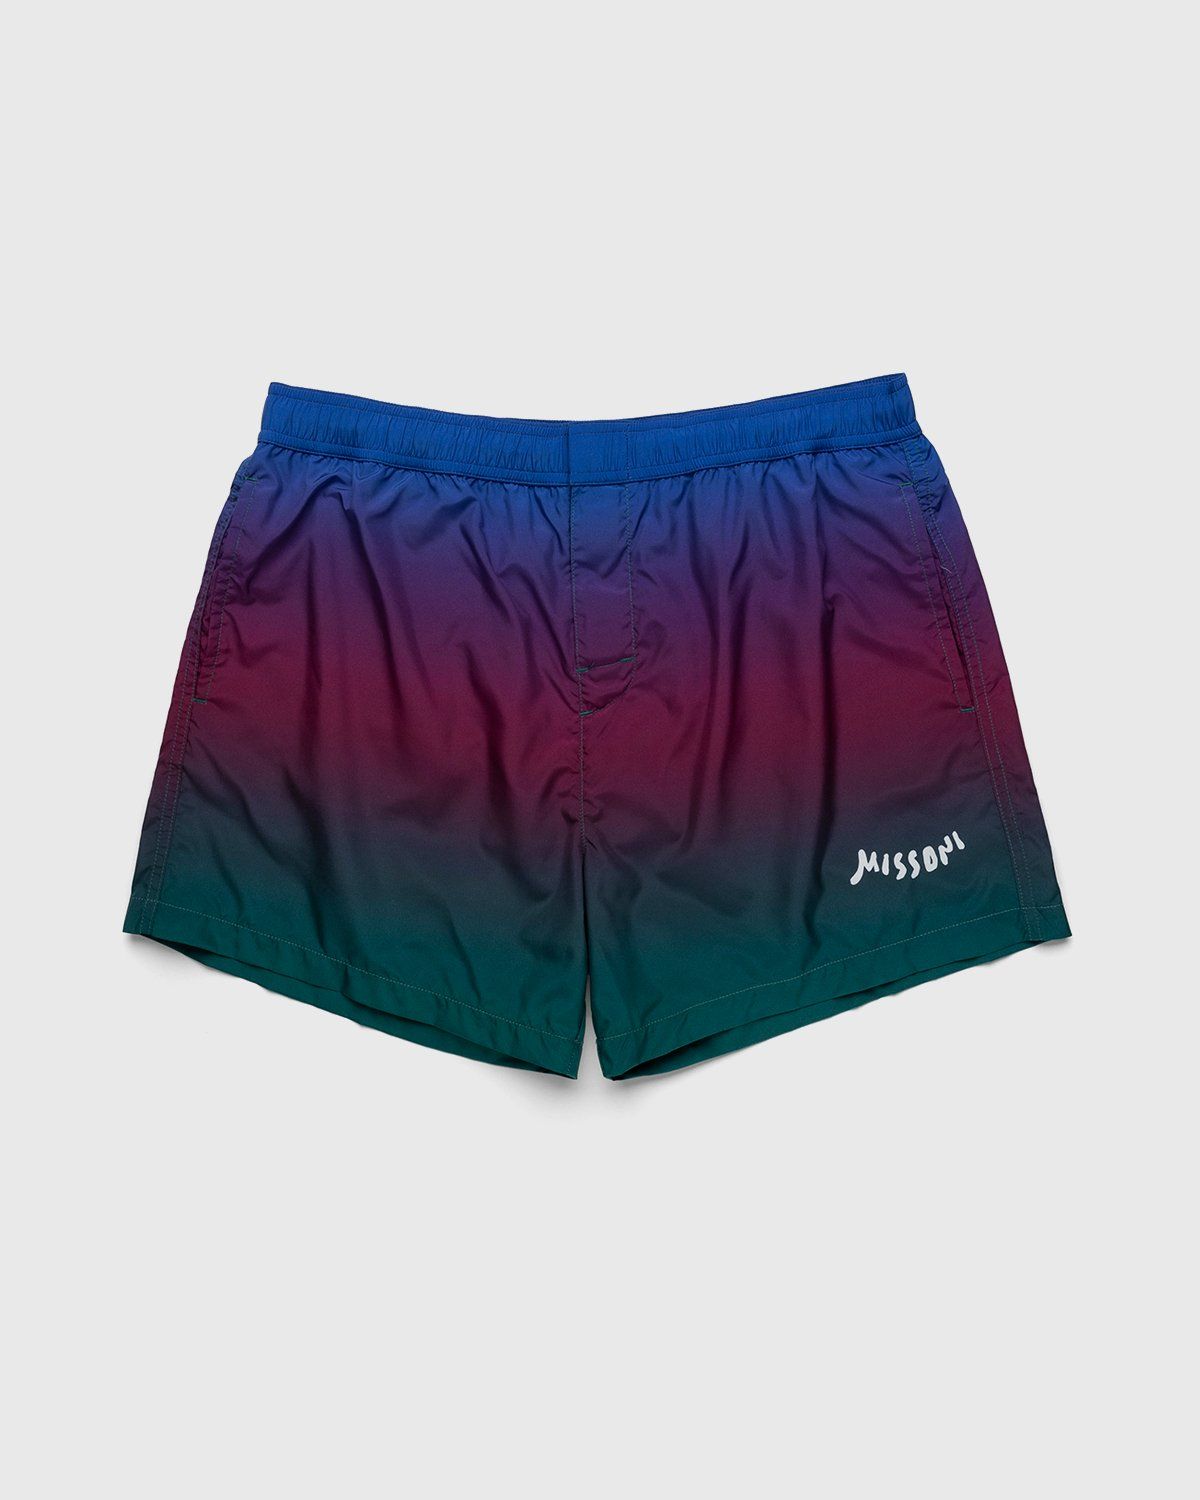 Missoni – Degrade Print Swim Shorts Blue - Swim Shorts - Blue - Image 1